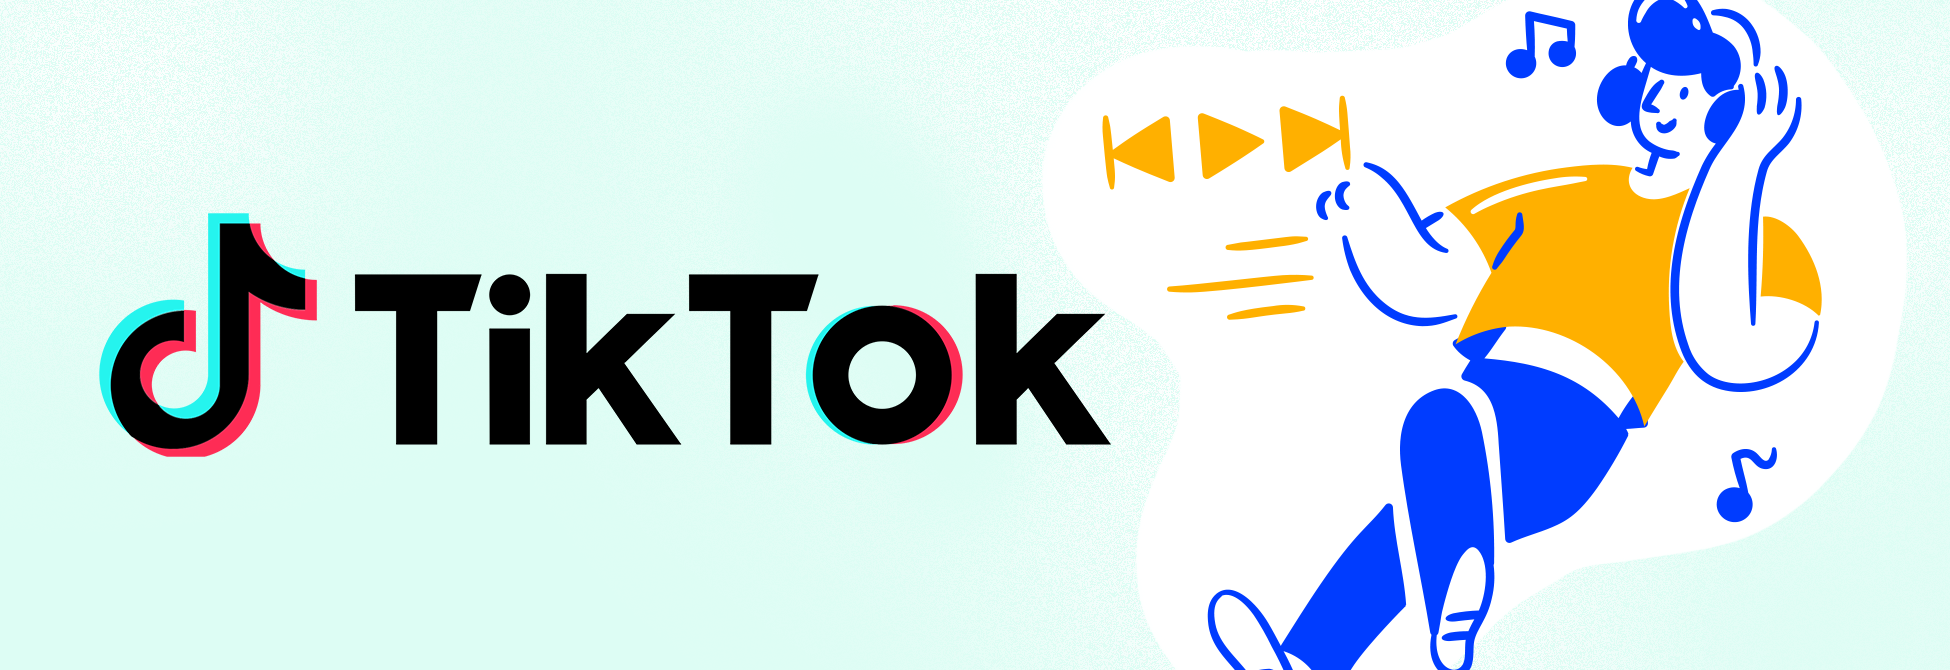 Voir notre guide sur comment devenir célèbre sur TikTok pour les artistes indépendants